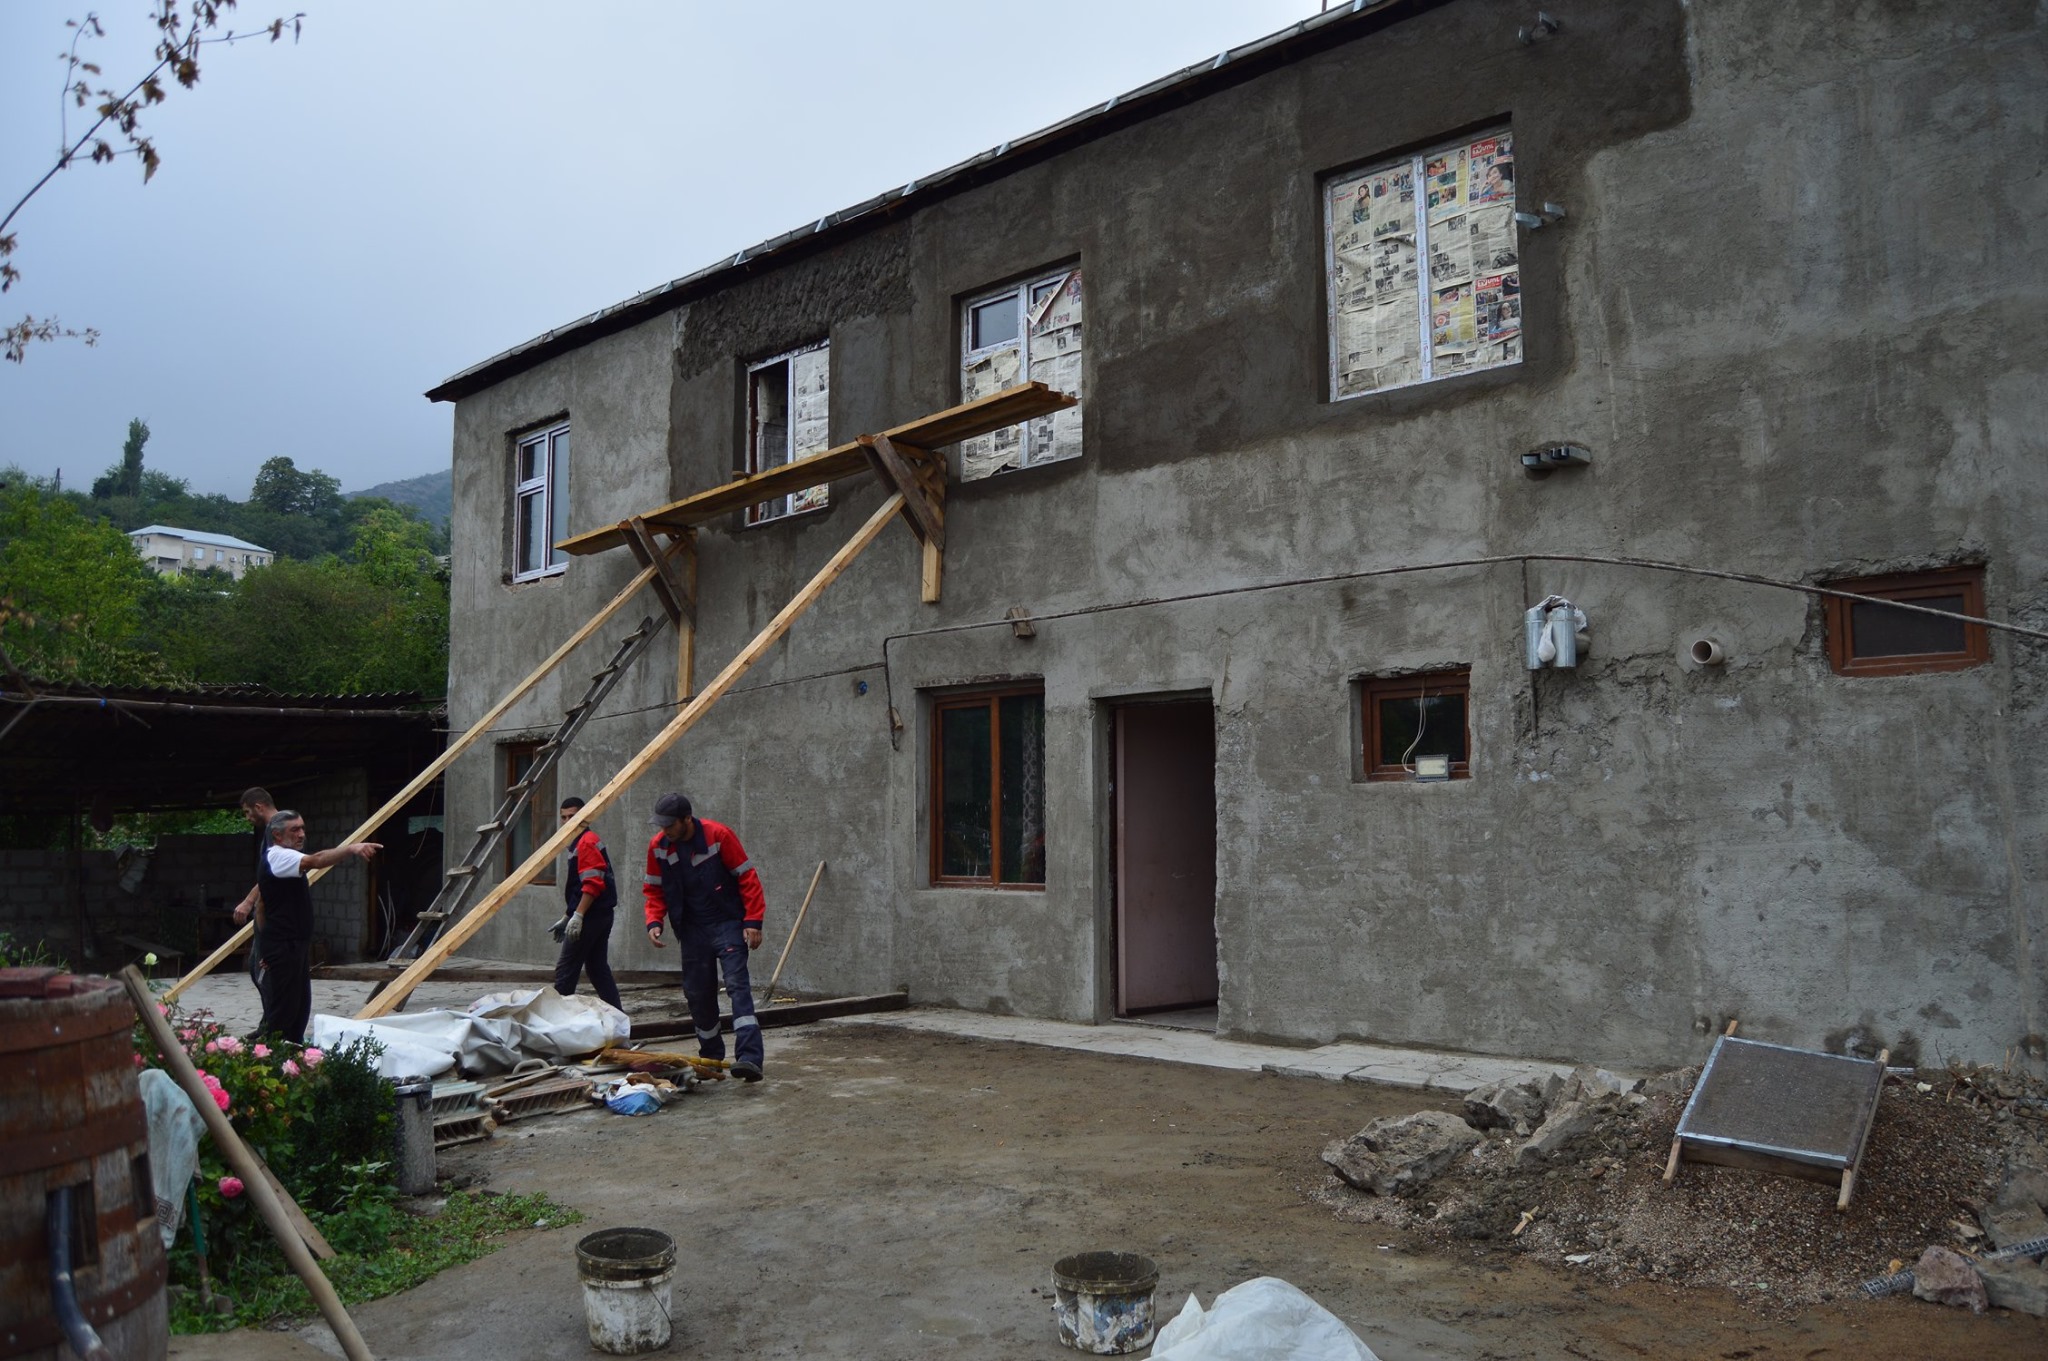 Սահմանապահ Այգեպար և Ներքին Կարմիրաղբյուր գյուղերի հրետակոծված տներից մի մասի վերանորոգումն արդեն ավարտական փուլում է